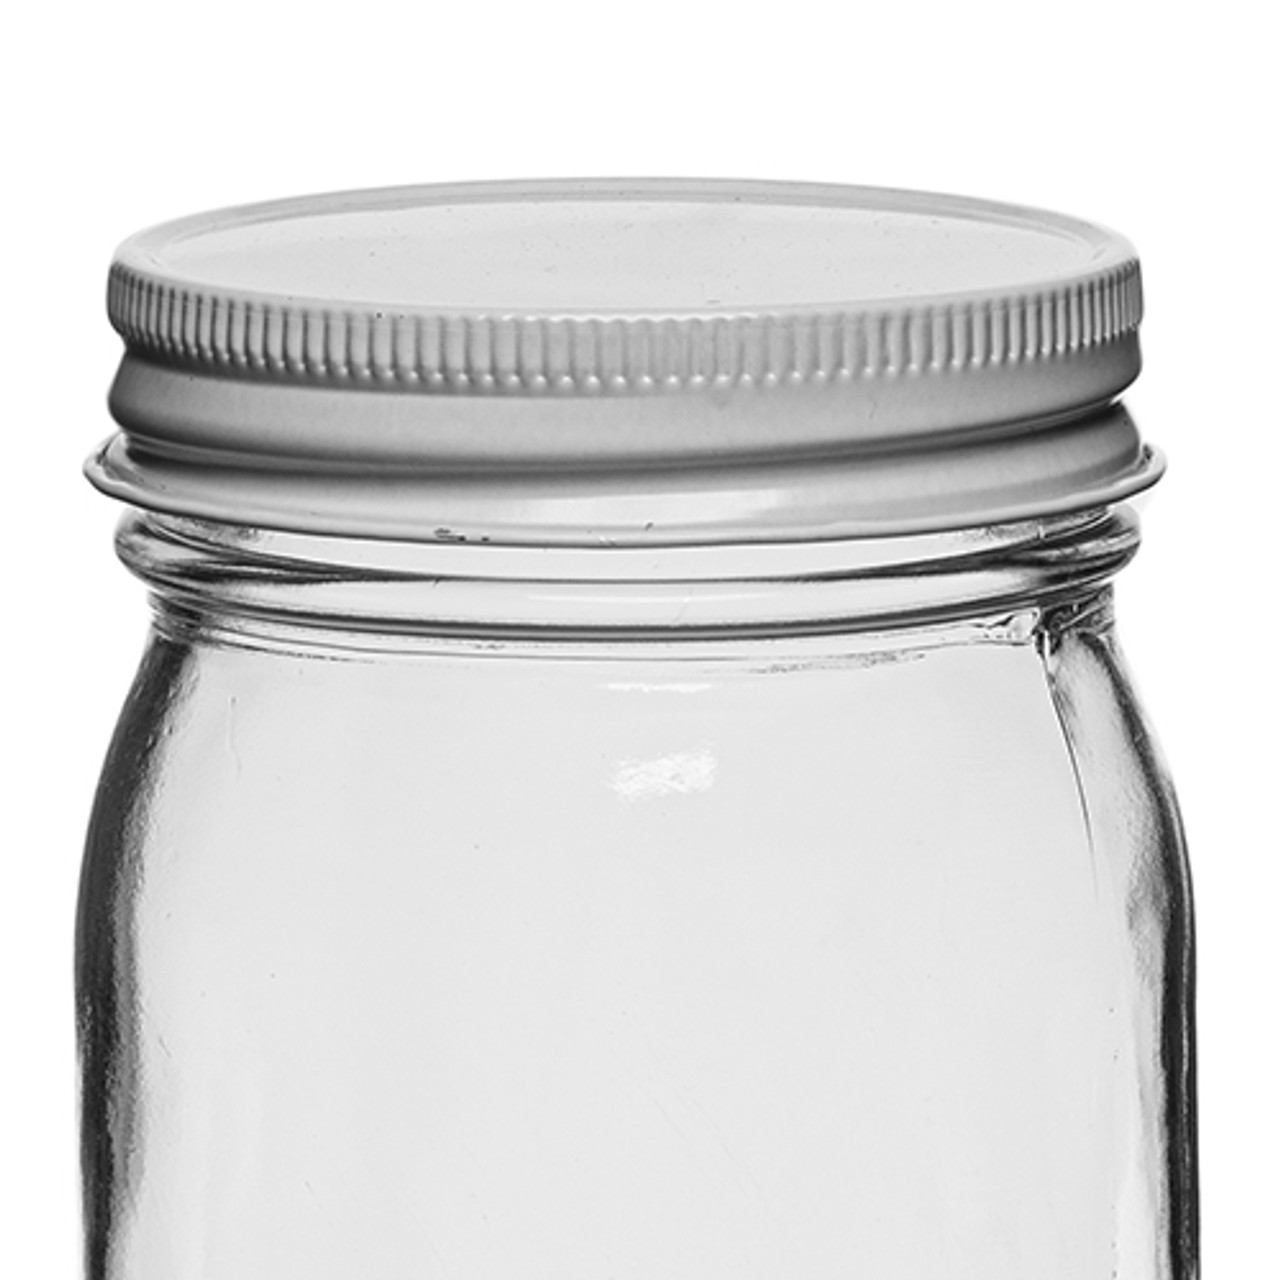 2.25 Ounce Unique Hexagonal Jar Favor